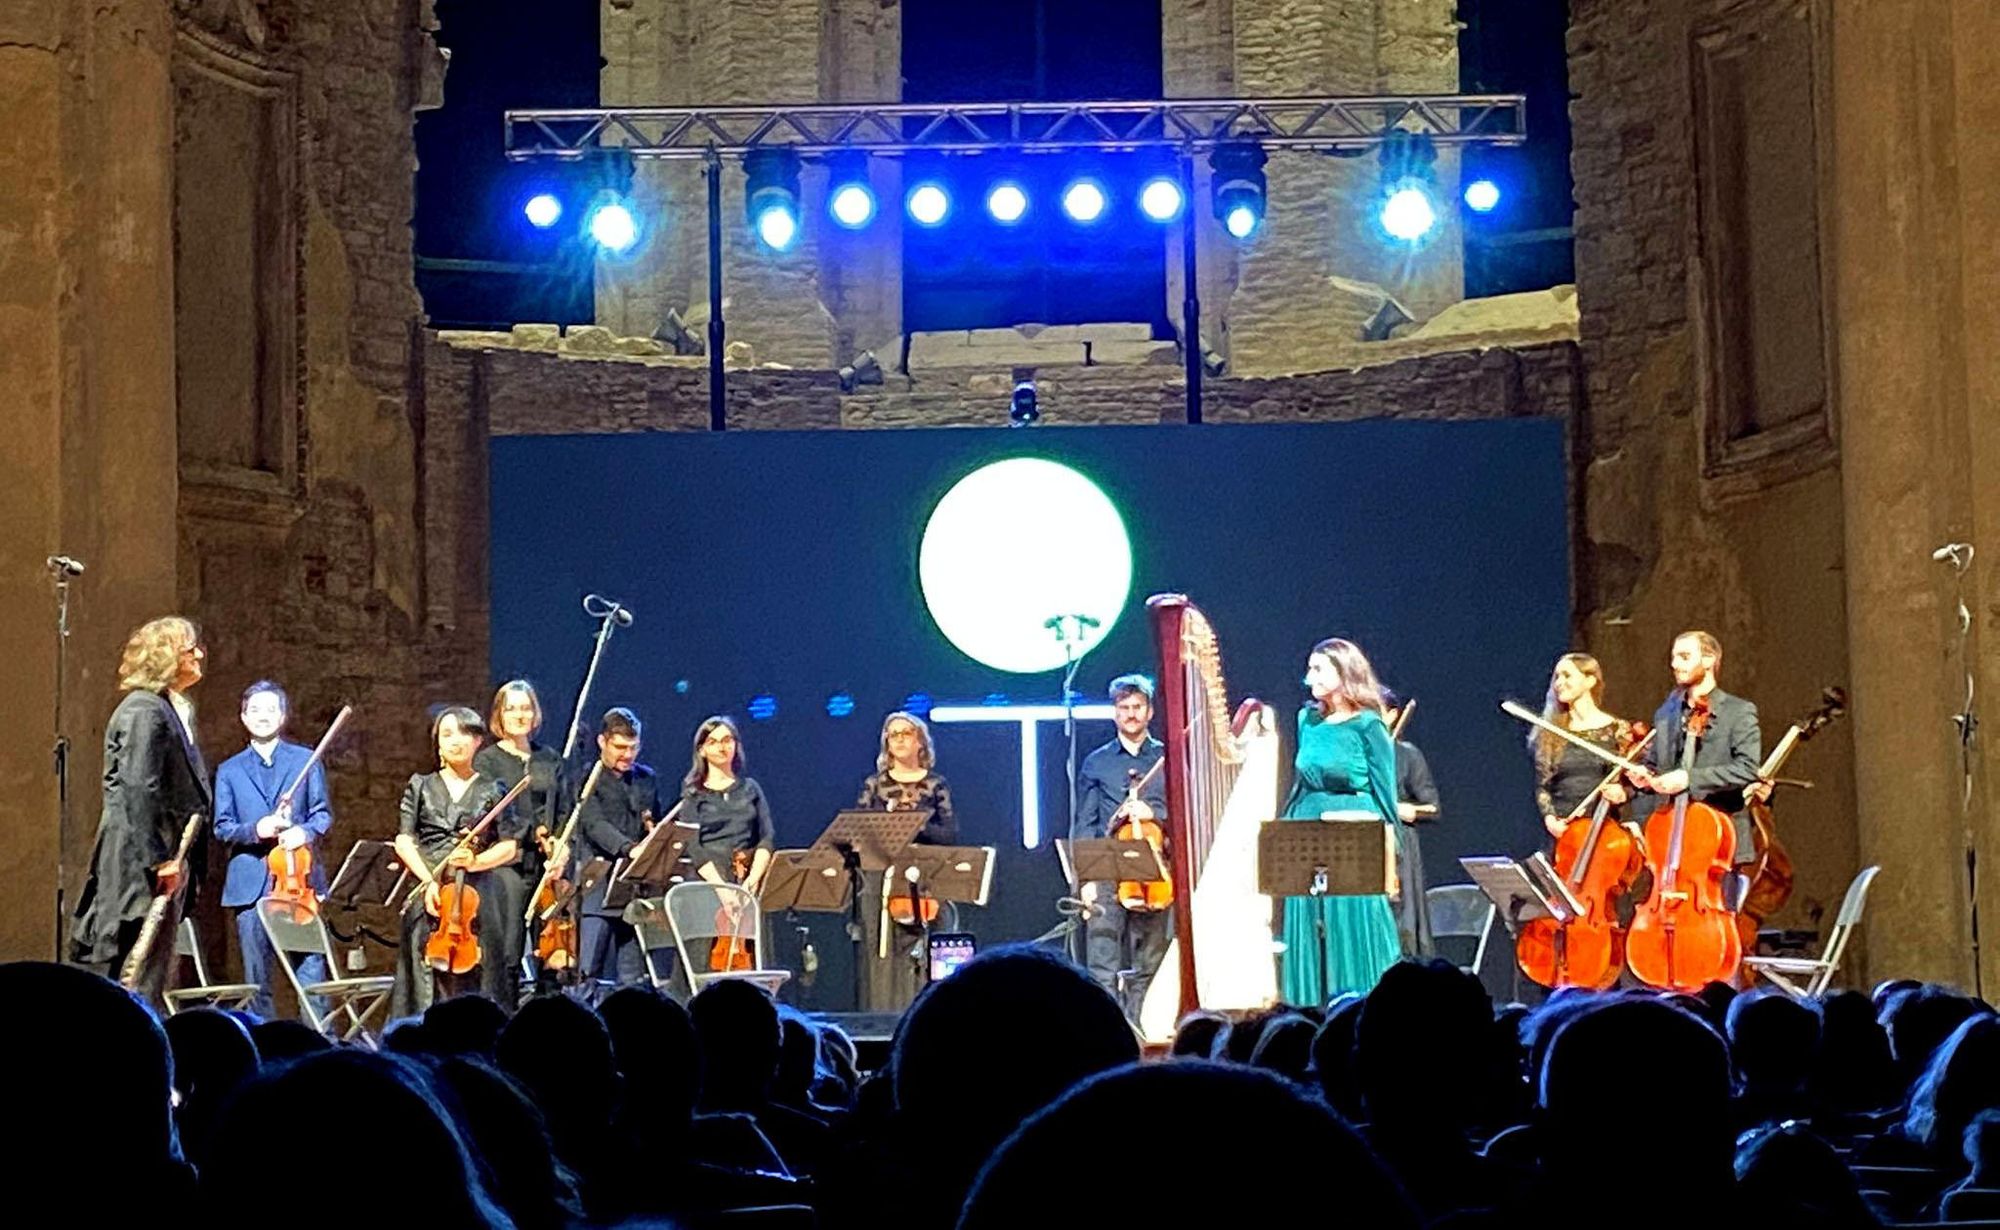 Venerdì 10 marzo - Basilica Superiore di Assisi L’Orchestra Suonosfera in concerto ad Assisi